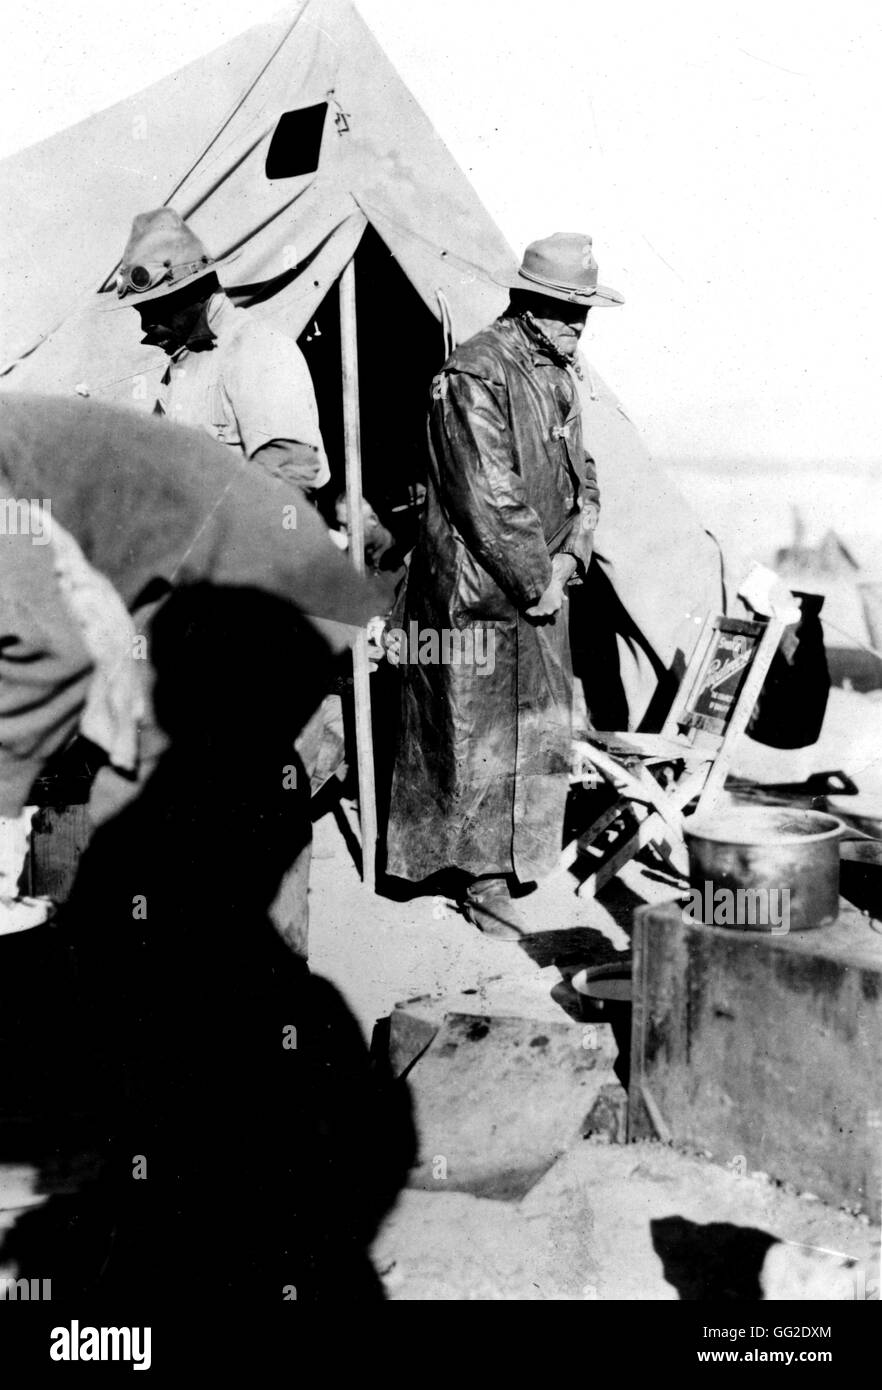 Révolution mexicaine. Le général Pershing, commandant en chef de l'expédition envoyée en territoire mexicain pour essayer de saisir Pancho Villa en mars 1916 Mexique 1916 Washington, D.C. Library of Congress Banque D'Images